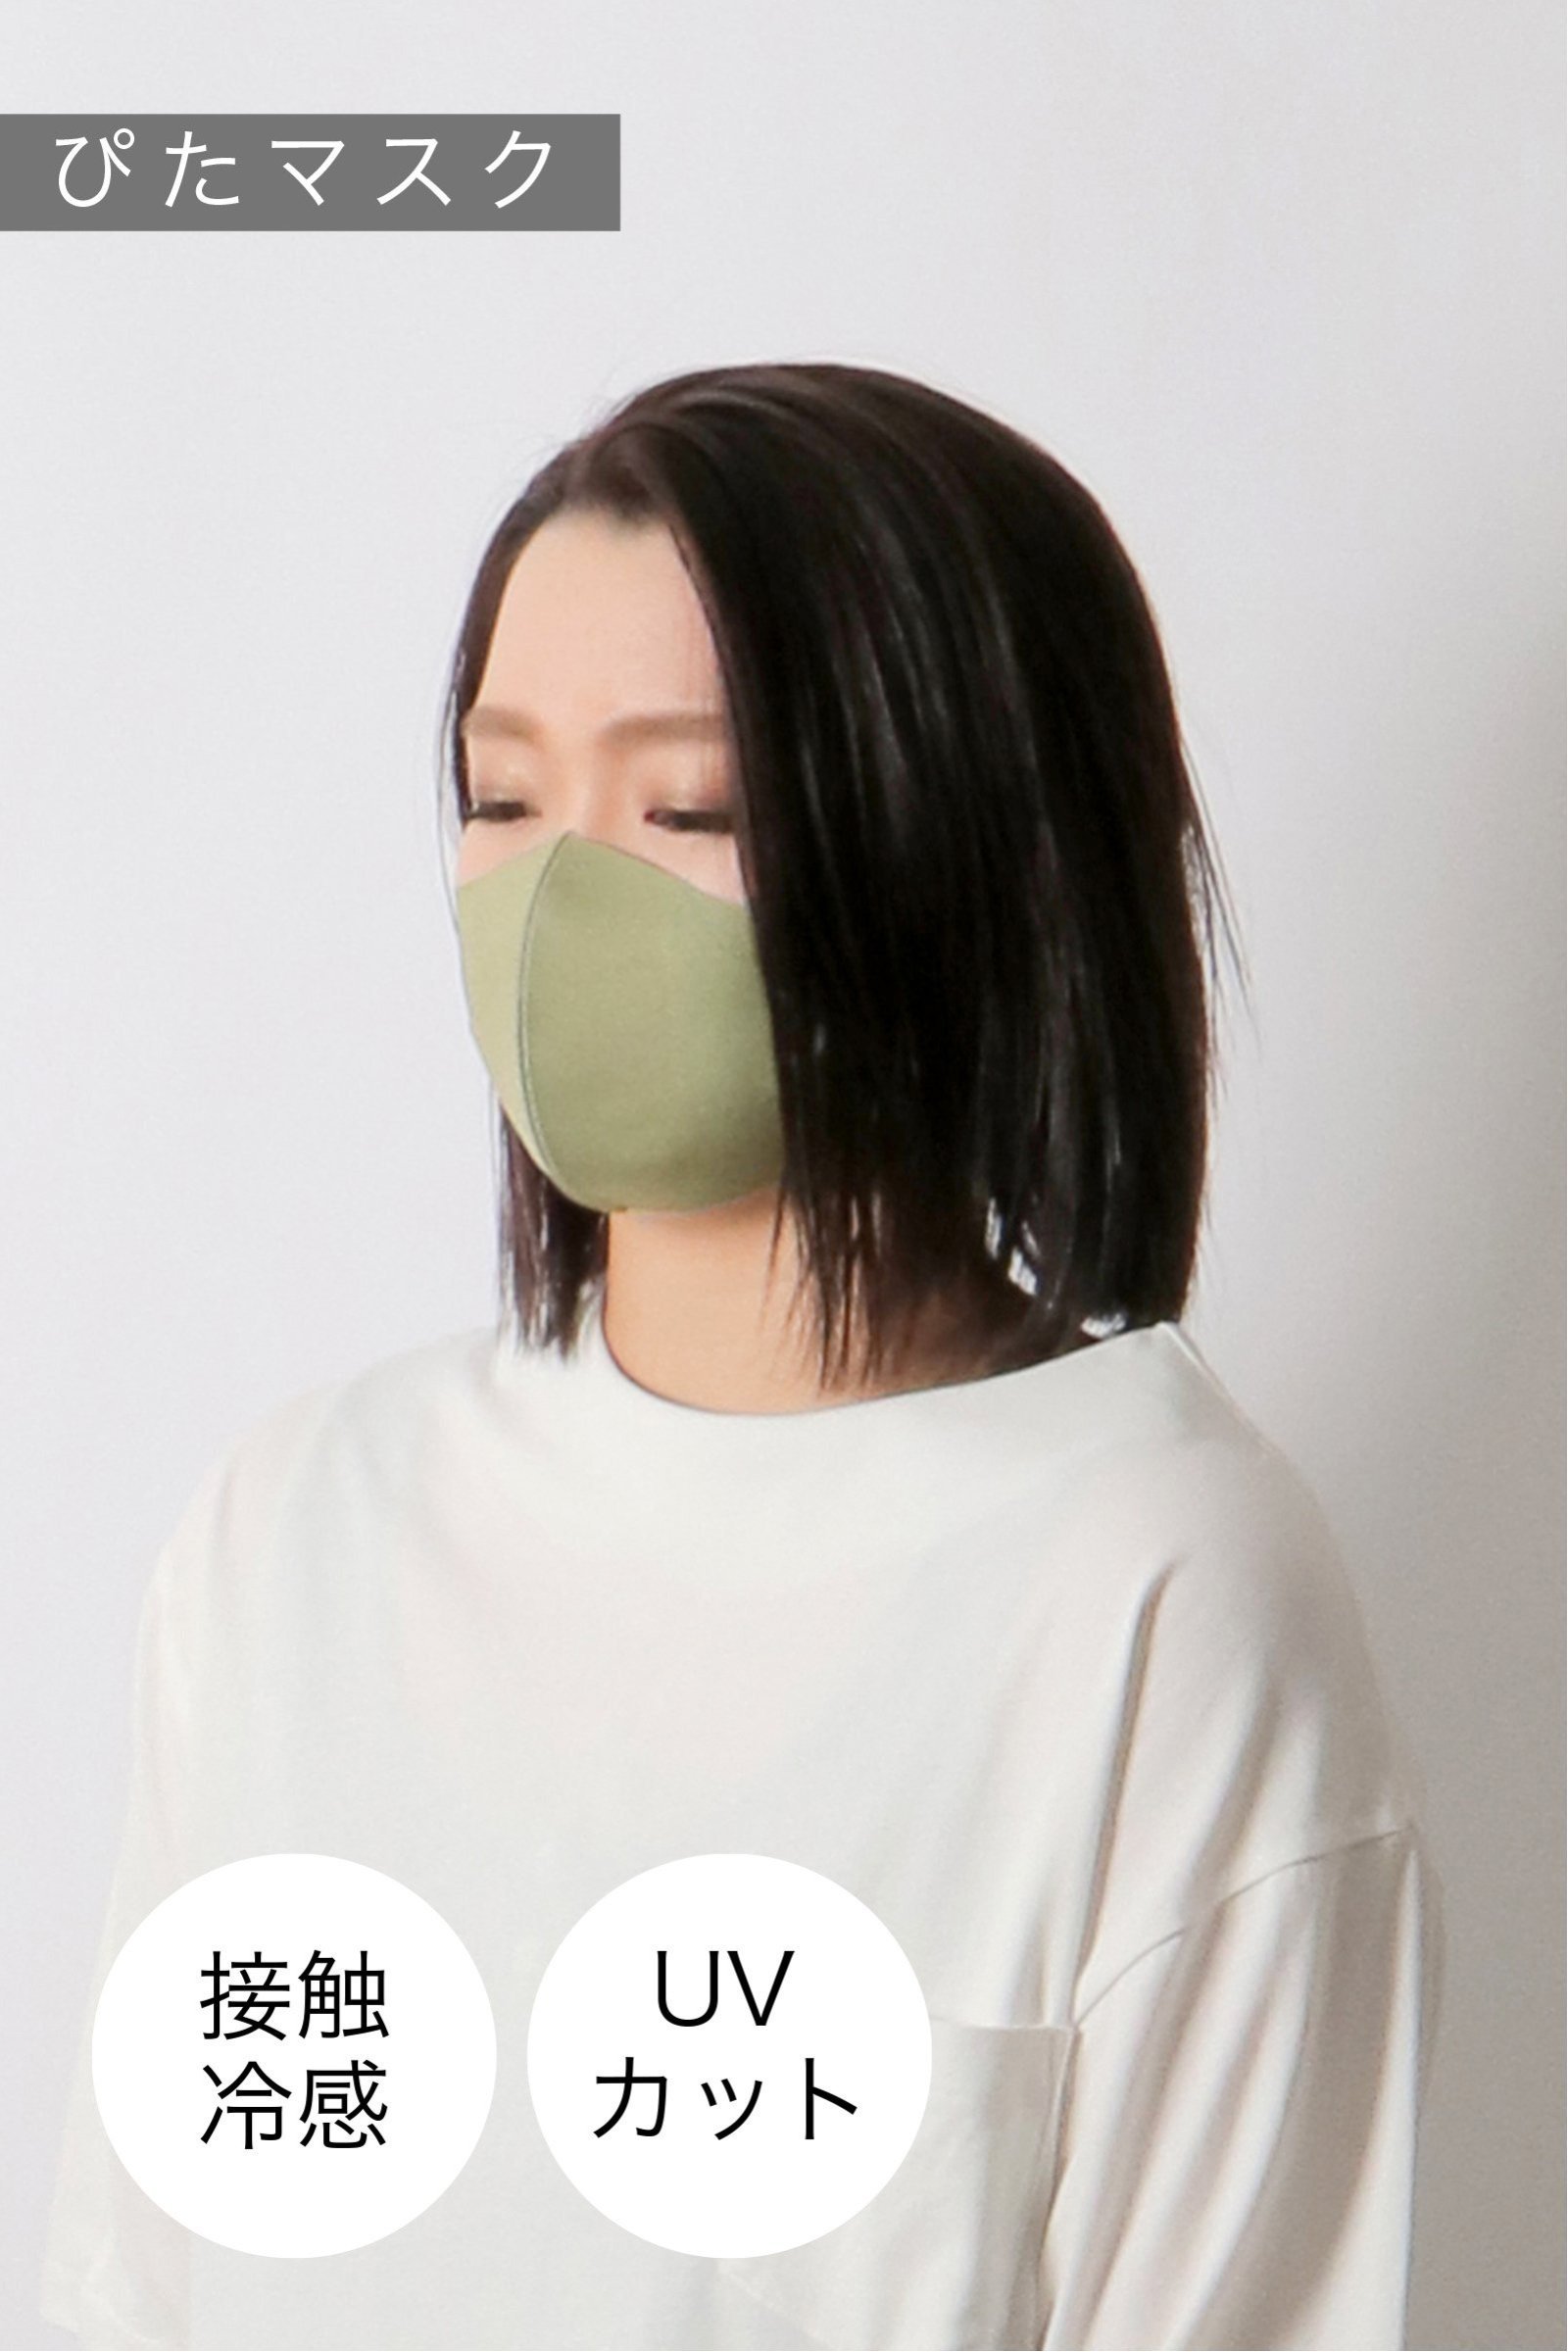 【おとな用】 ぴたマスク(3枚セット)  オリーブ